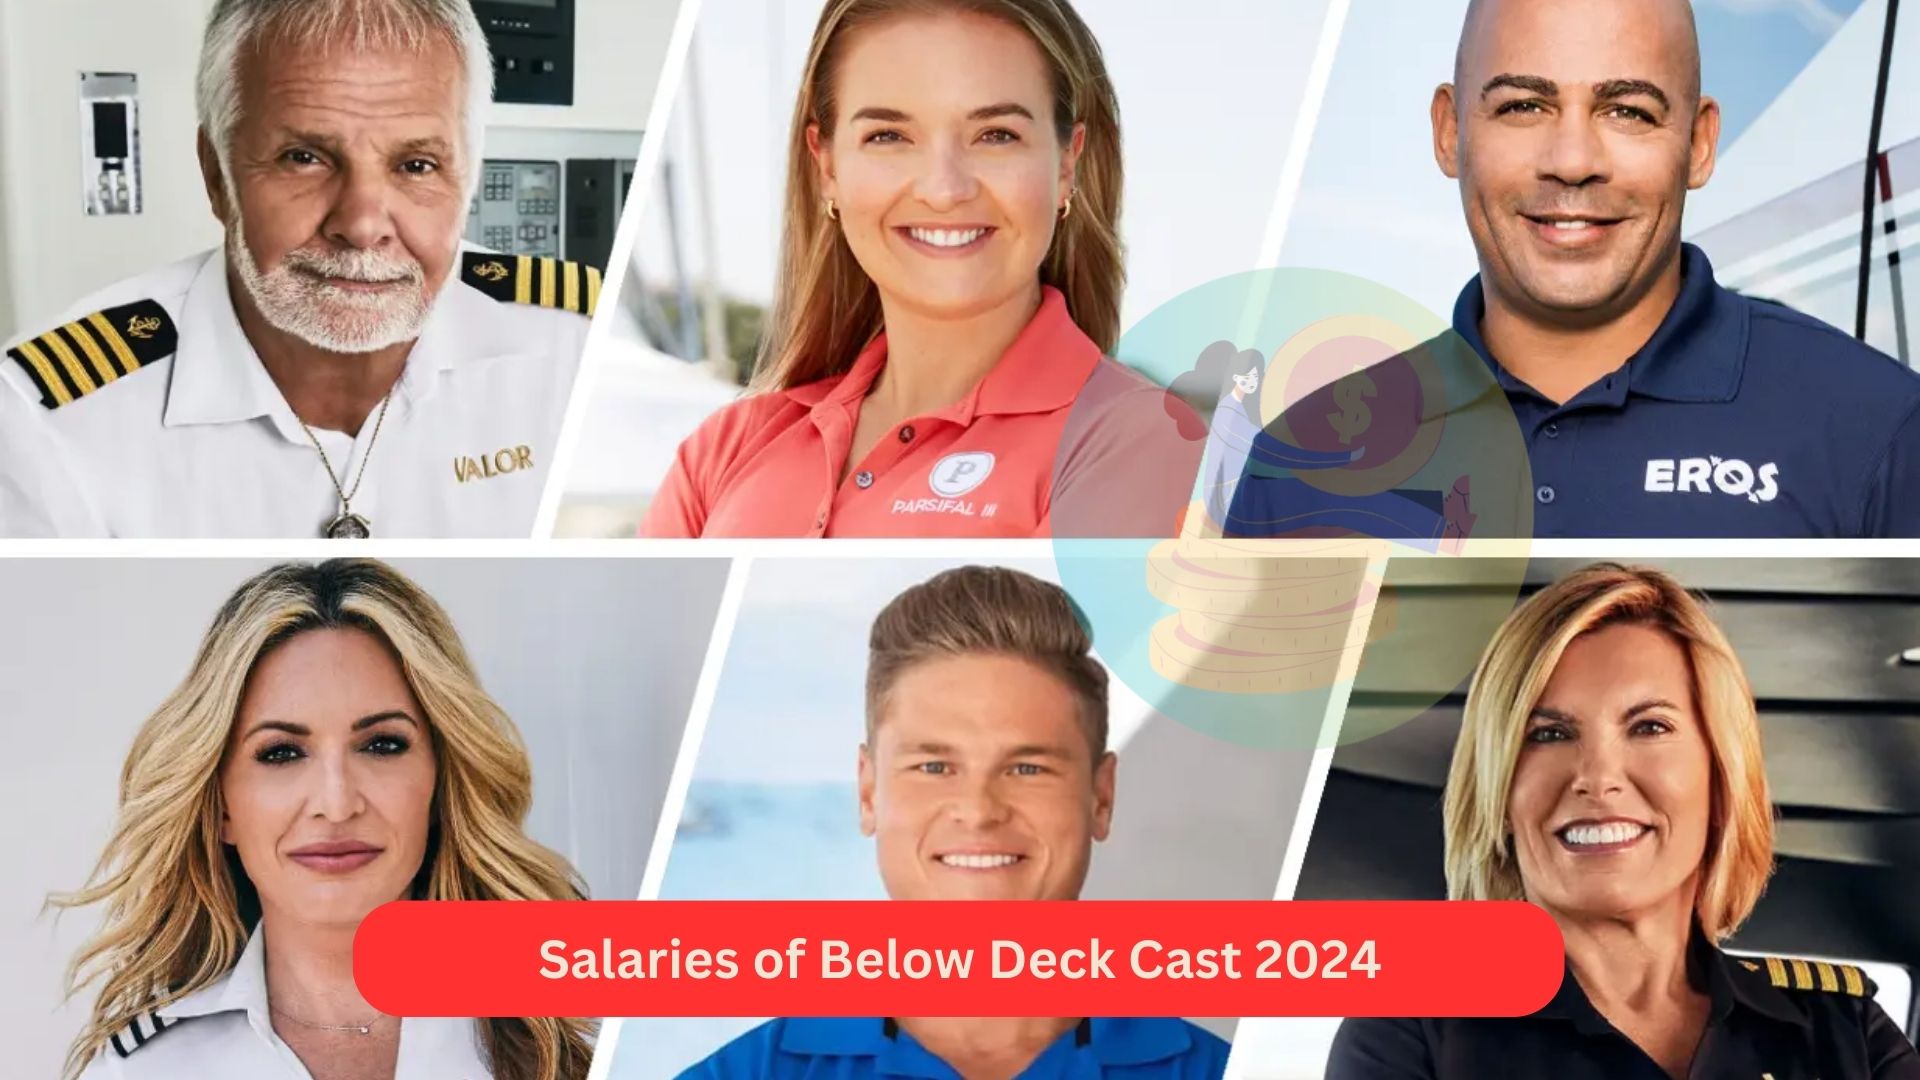 Salaries of Below Deck Cast 2024